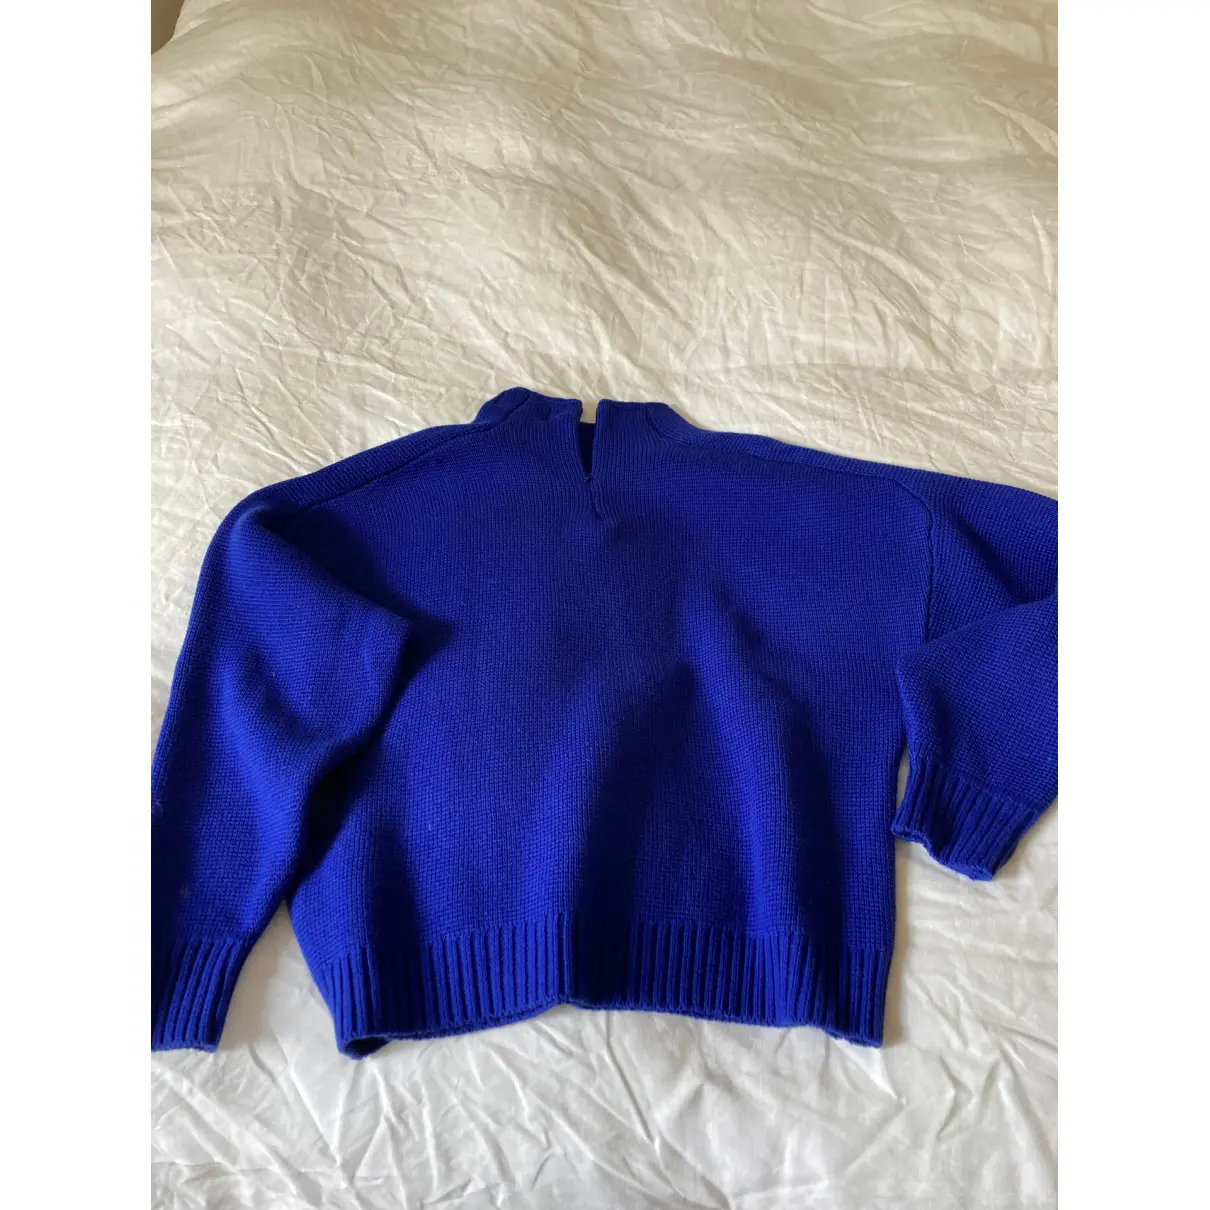 Buy Ba&sh Fall Winter 2019 wool jumper online